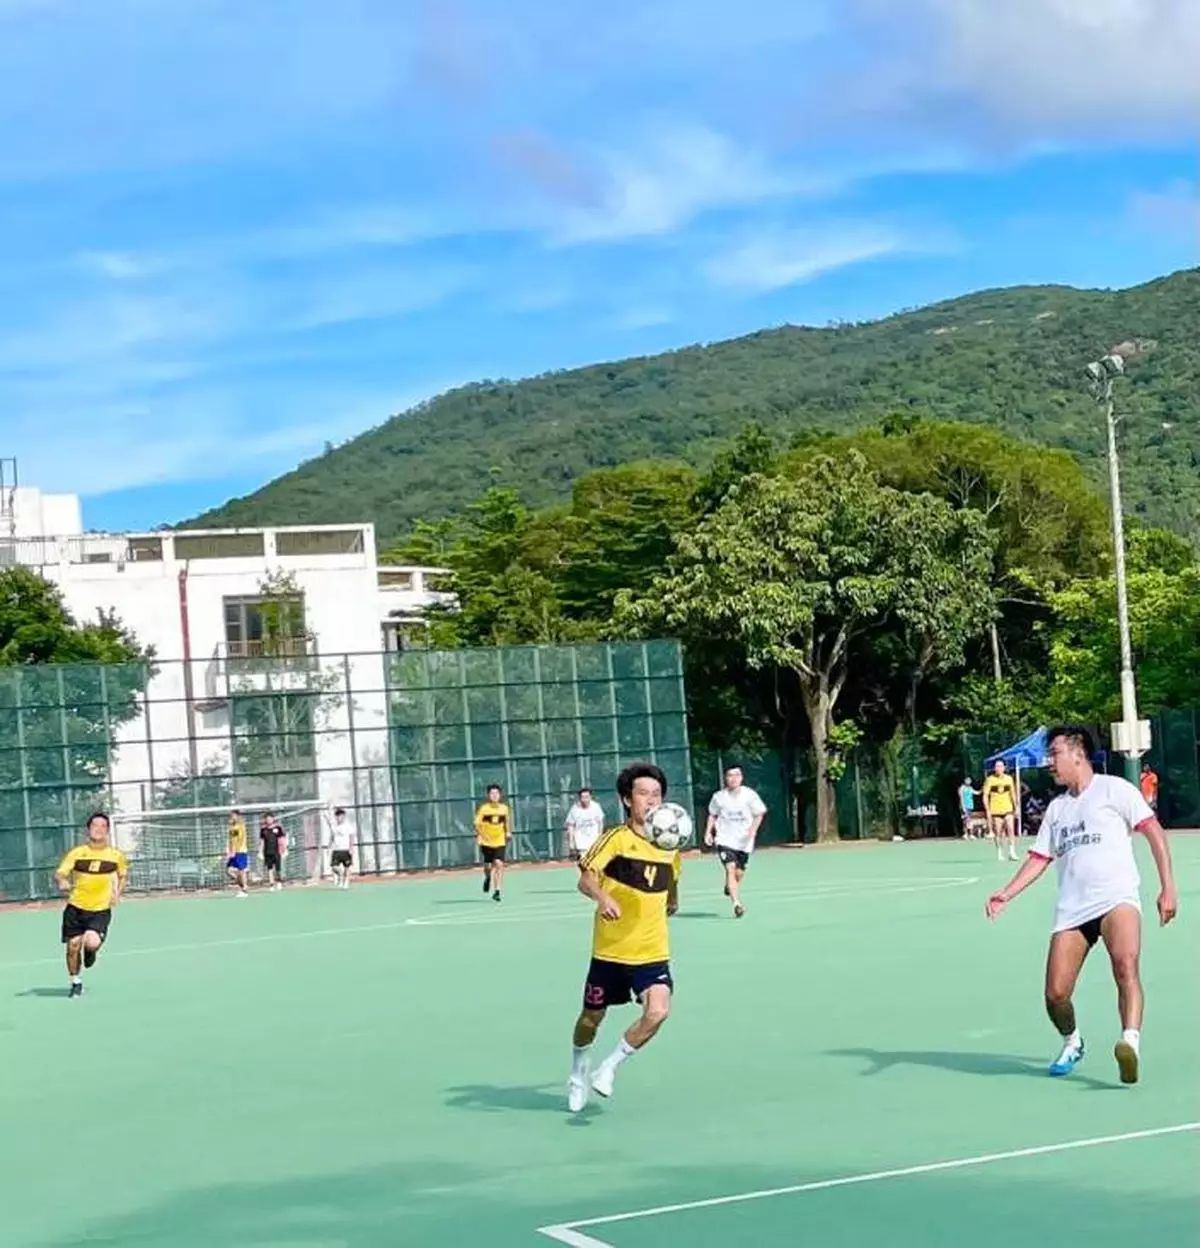 離島青年盃七人足球邀請賽為慶回歸活動打響頭炮